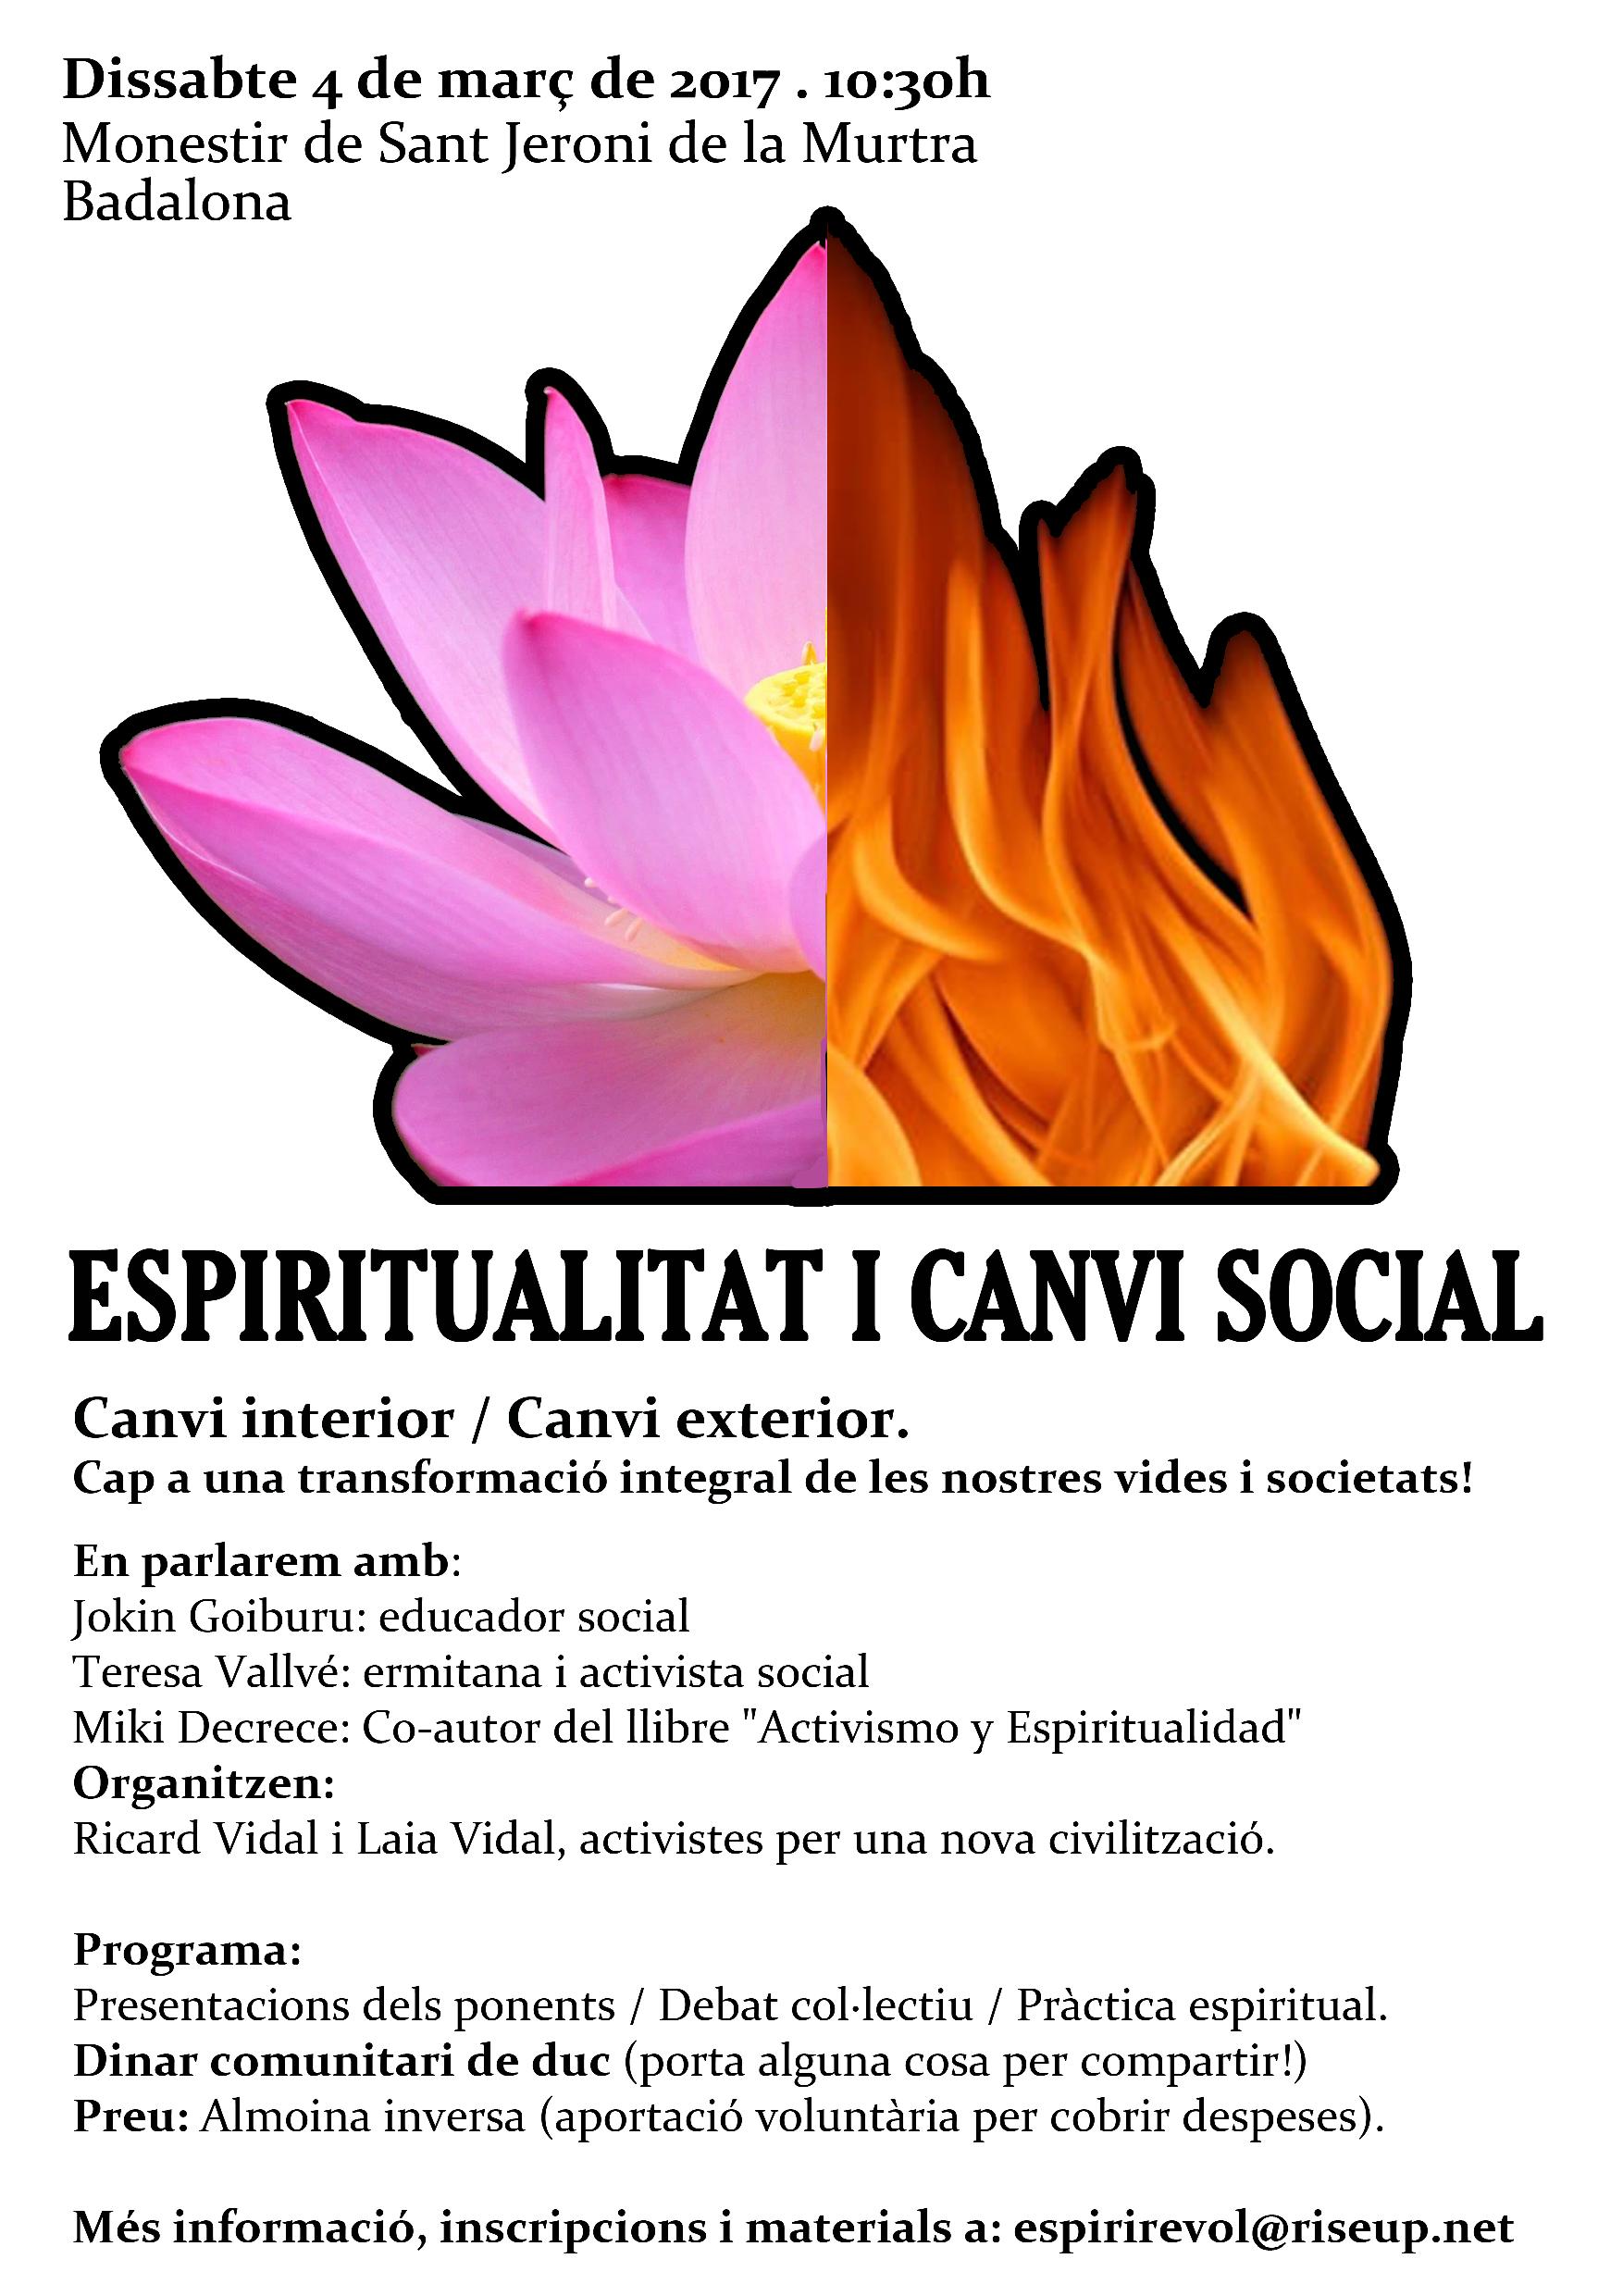 Espiritualitat i canvi social 3 opció1